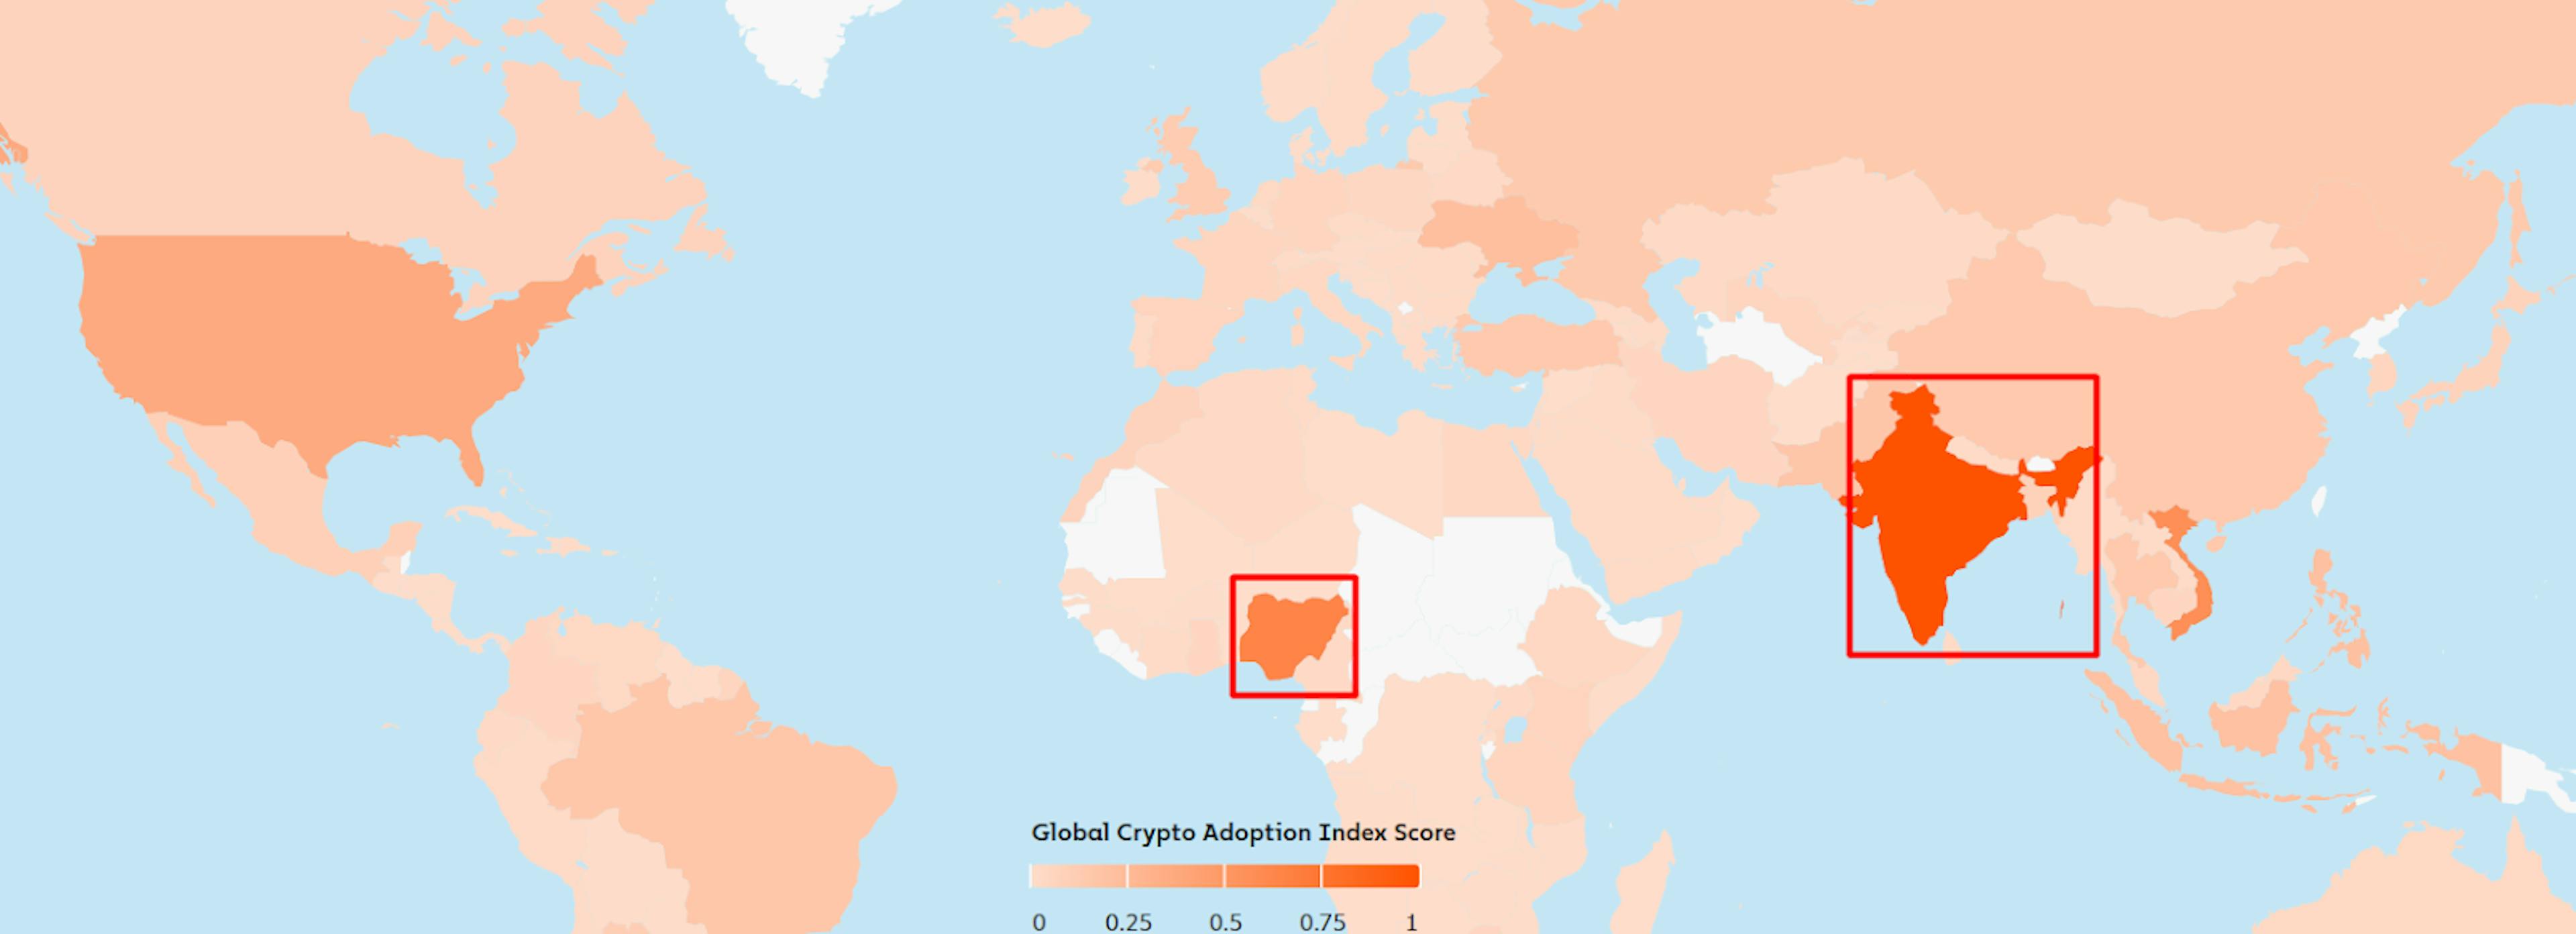 出典: https://www.chainaracy.com/blog/2023-global-crypto-adoption-index/#top20